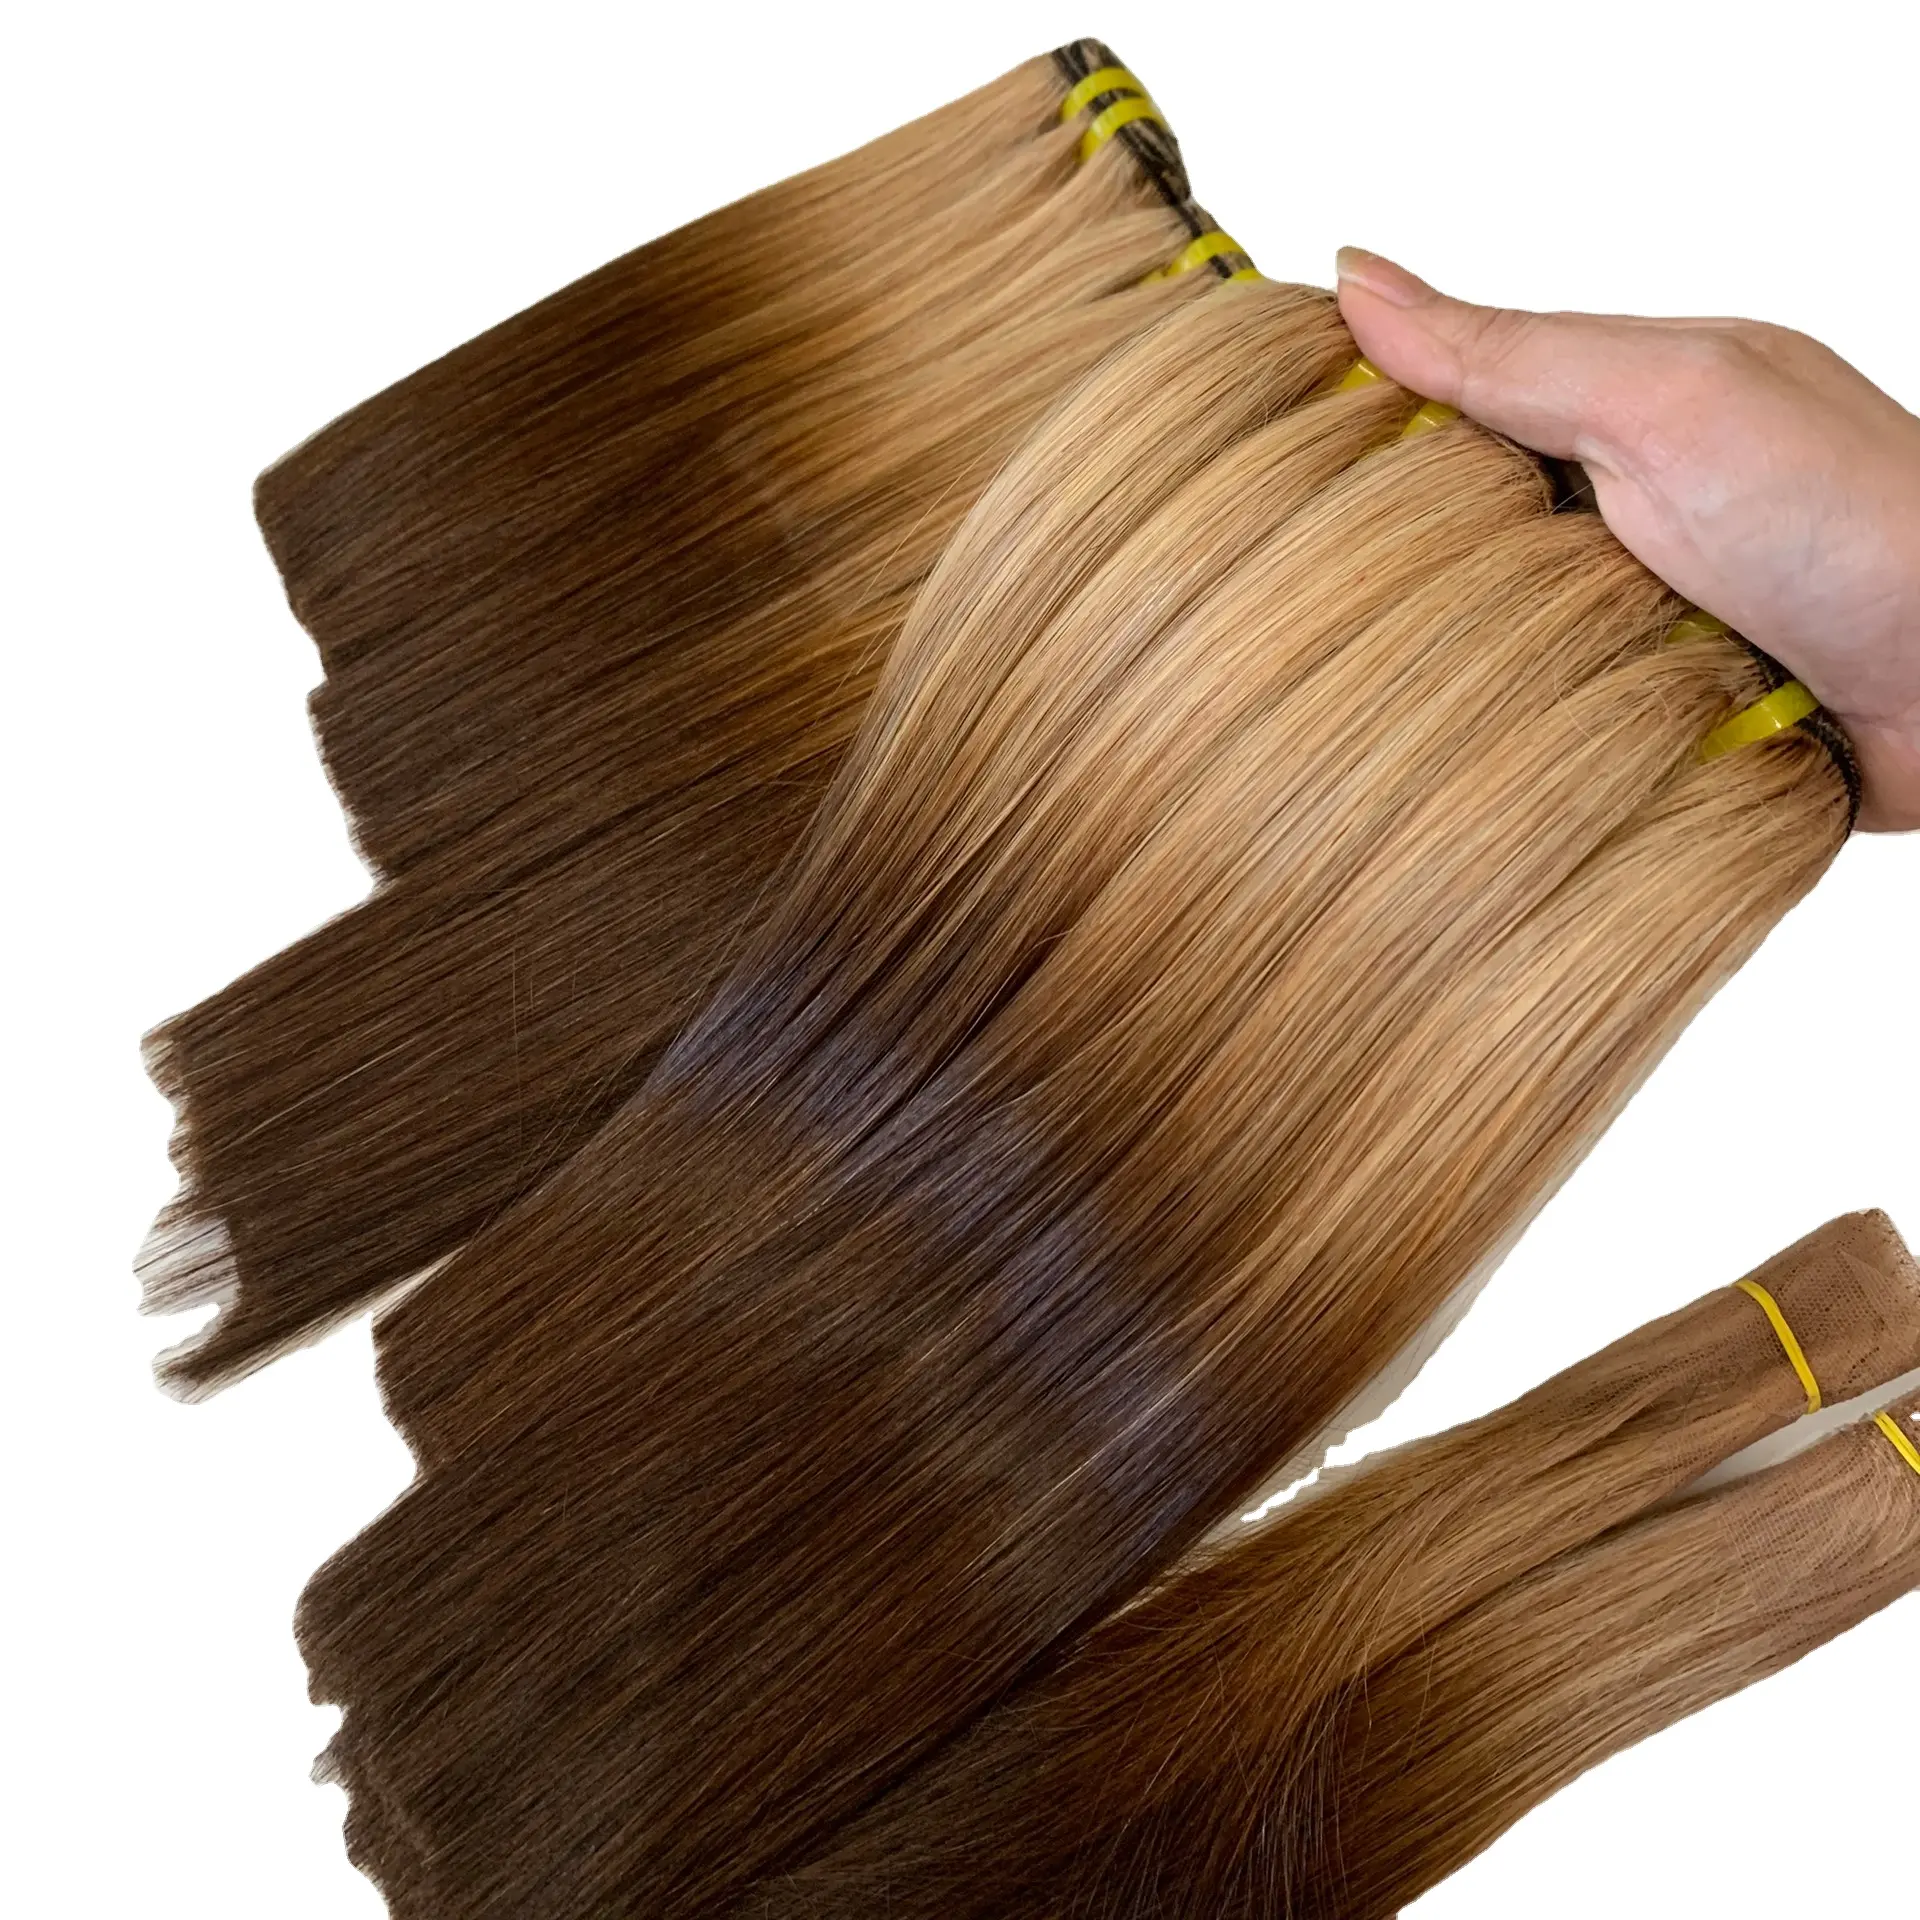 10А норковые бразильские волосы, необработанные волосы с выравненной кутикулой, бесплатный образец, натуральные бразильские человеческие волосы, пучки с застежкой DHL MOON